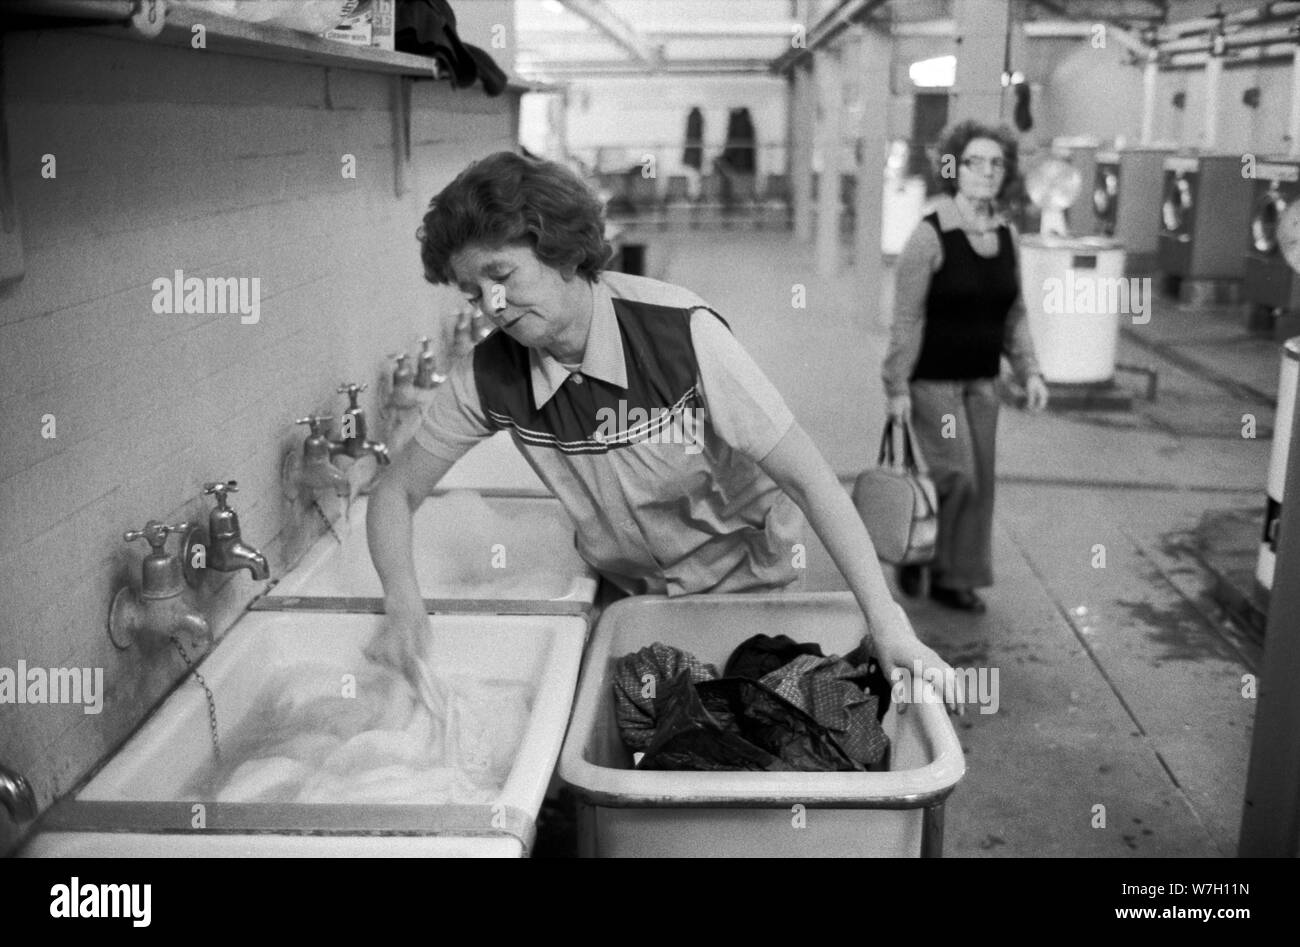 Servizio di lavanderia pubblico 1970 UK. Donne che prendono i loro vestiti usati sporchi ad una lavanderia pubblica per farli lavare. Battersea South London 1979 70s England HOMER SYKES Foto Stock